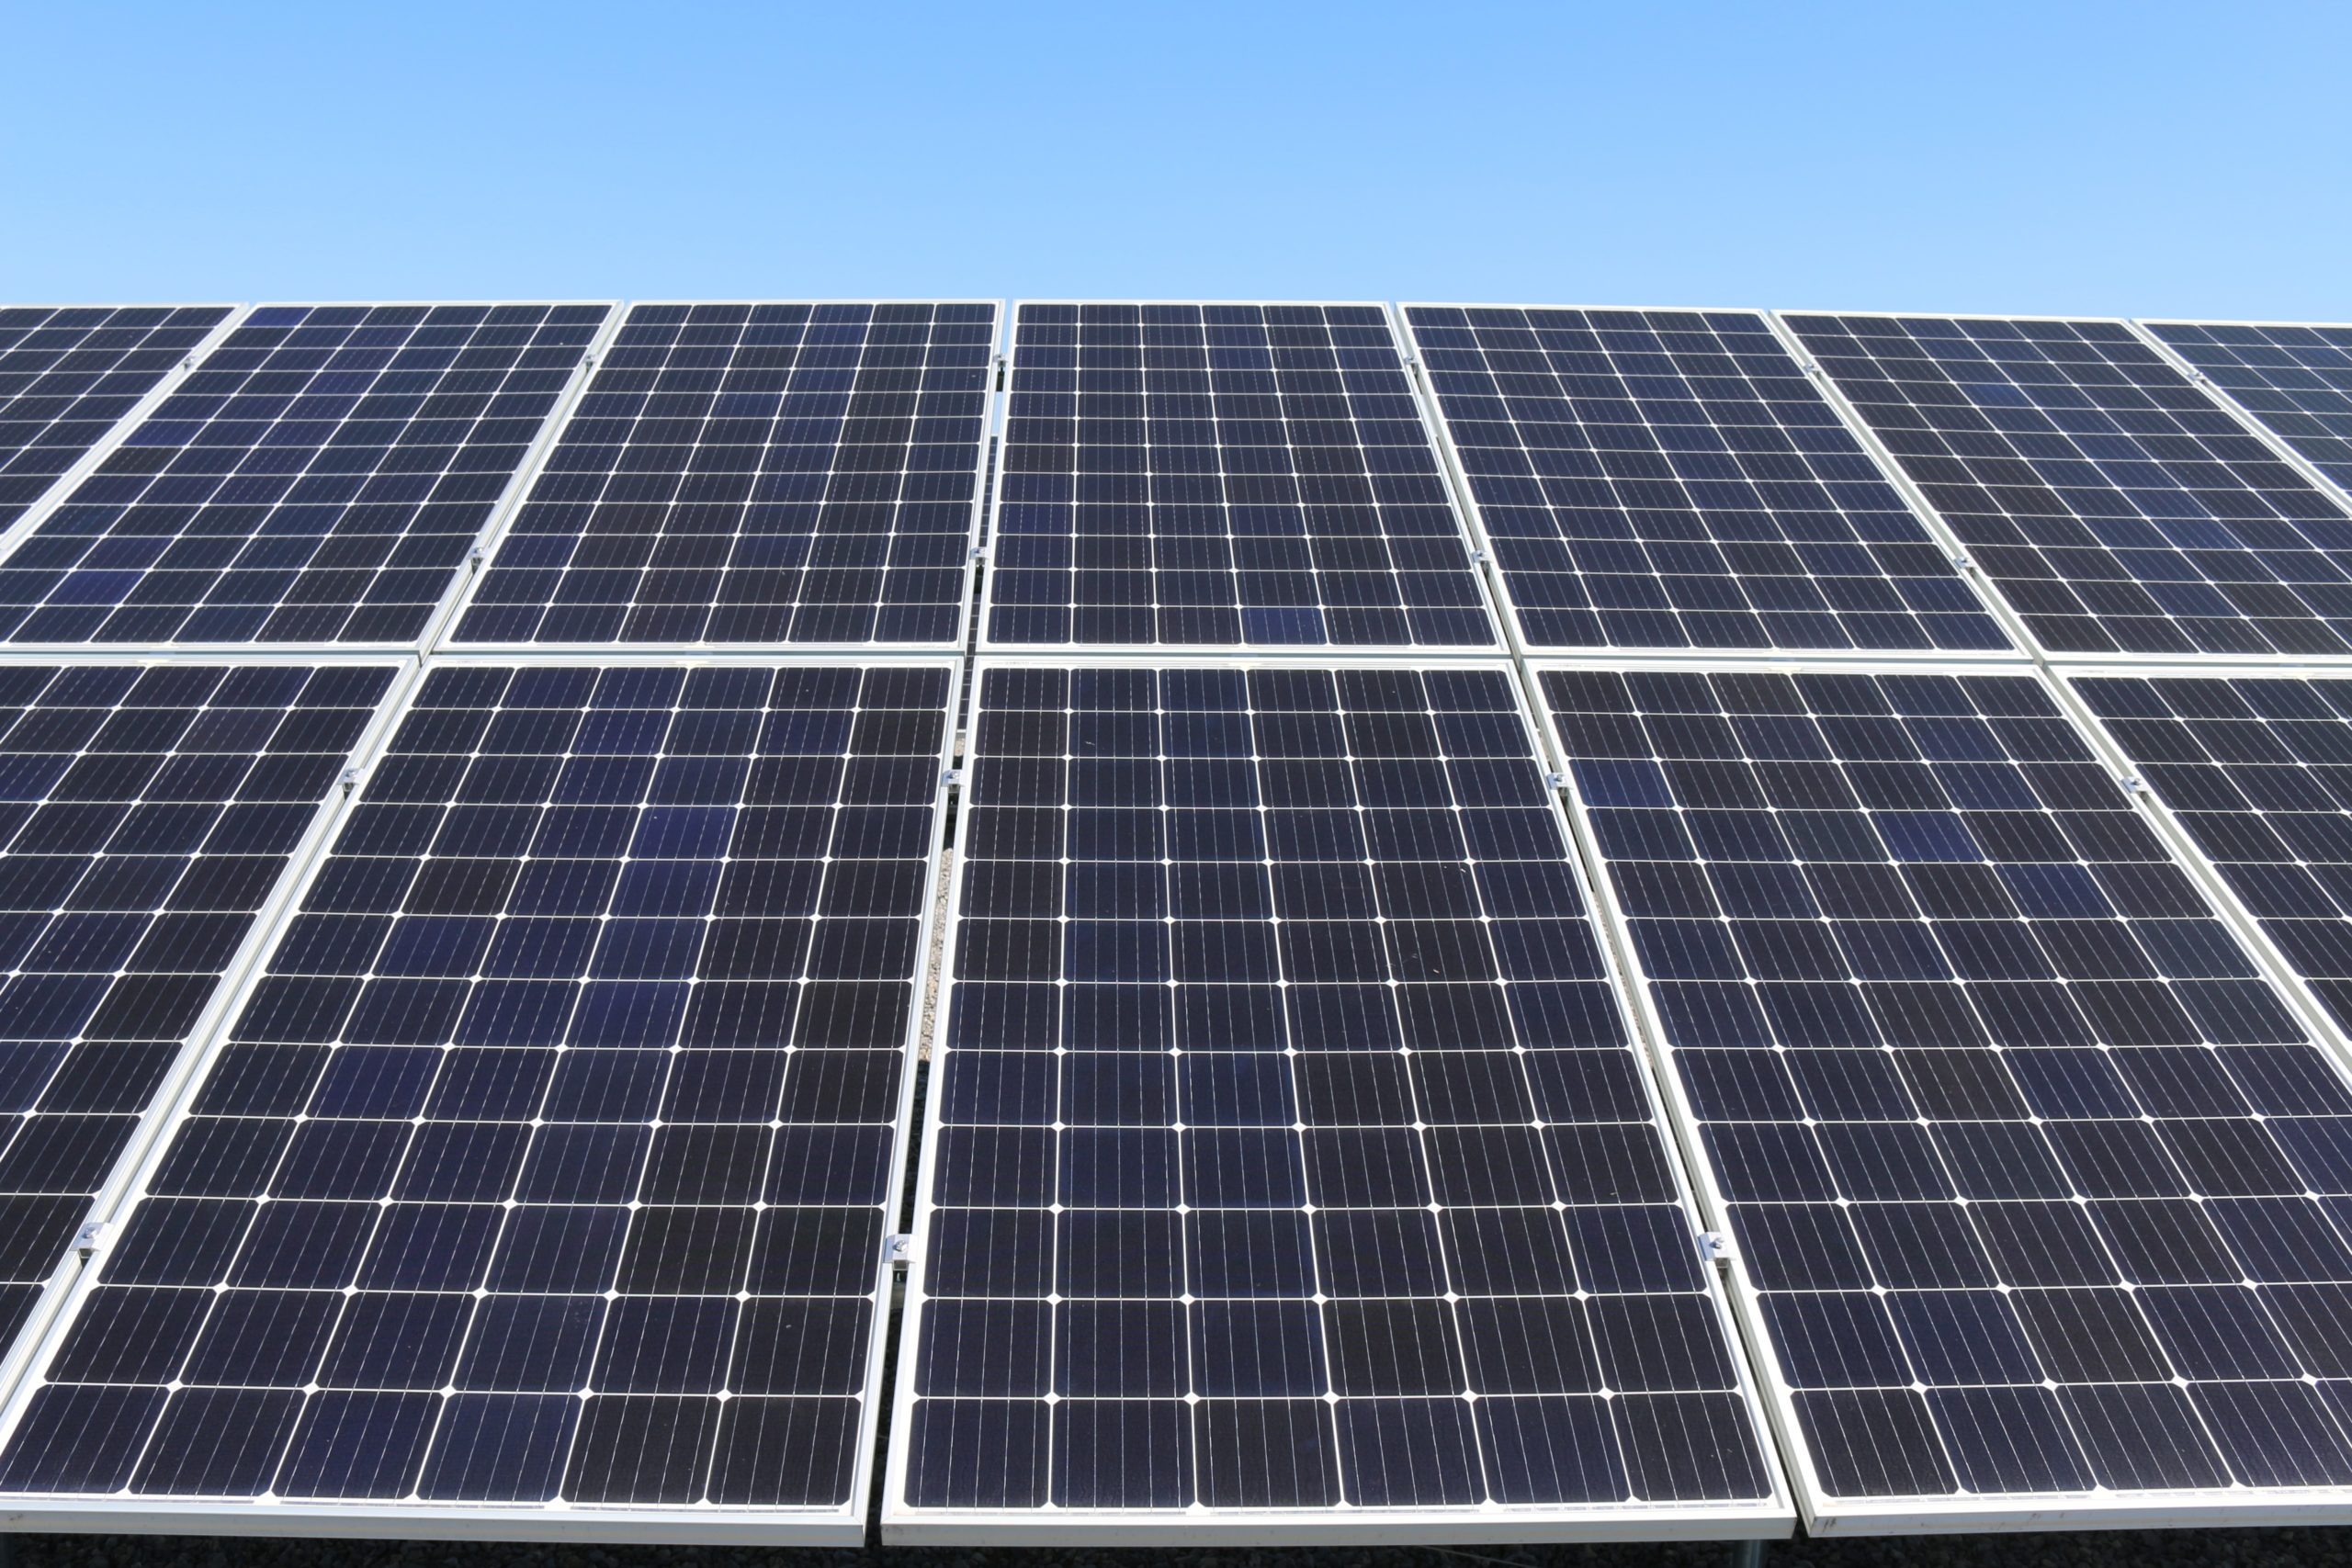 Zrównoważony rozwój: TOP-5 największych elektrowni słonecznych na dachach magazynów